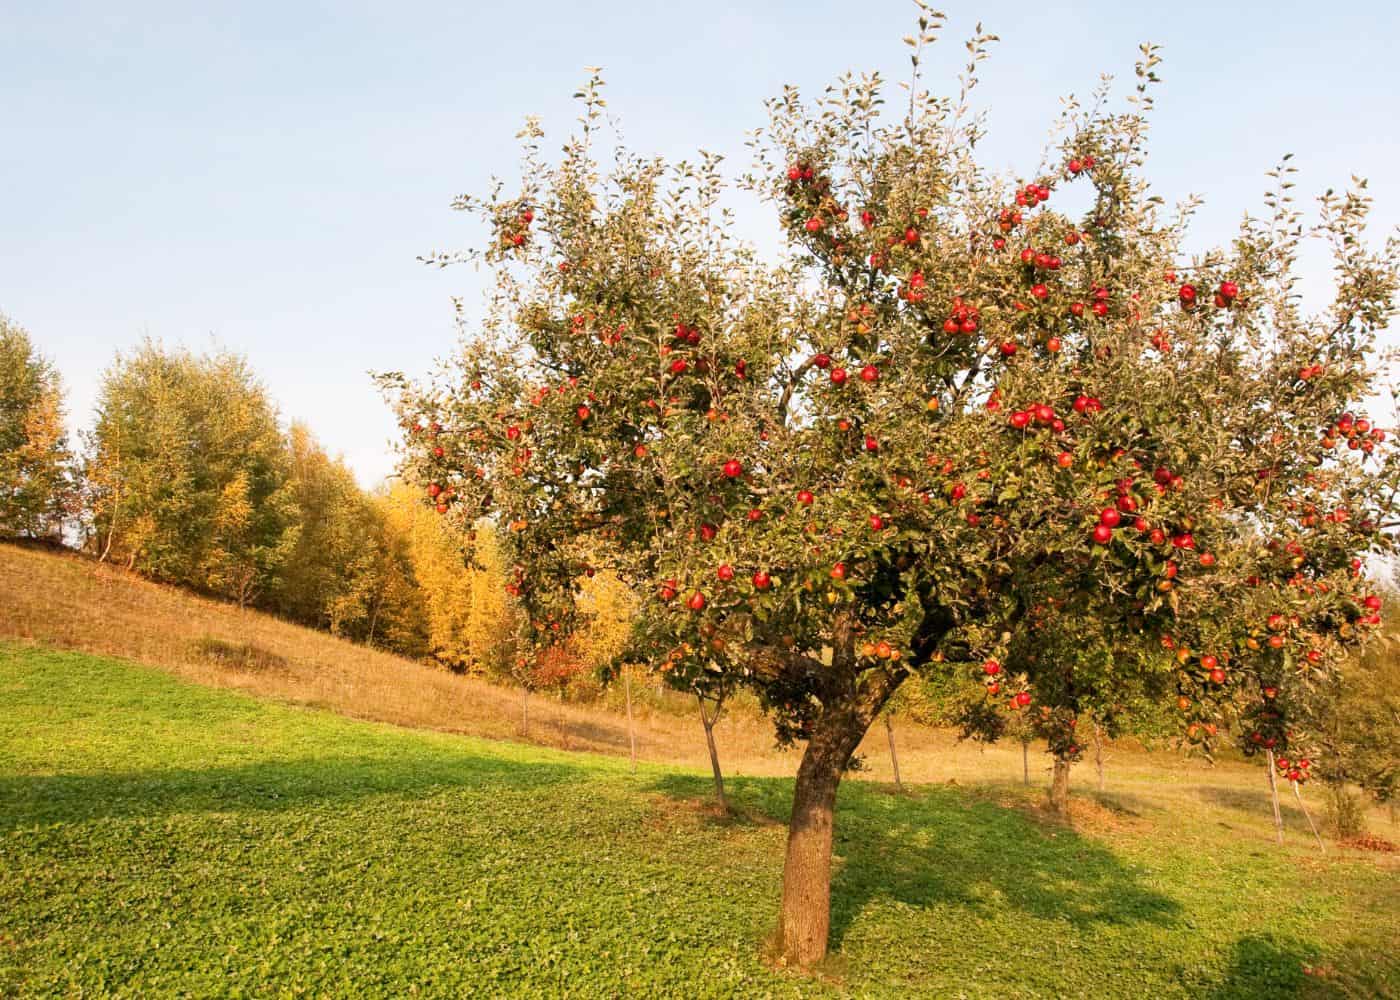 Old semi-dwarf apple tree